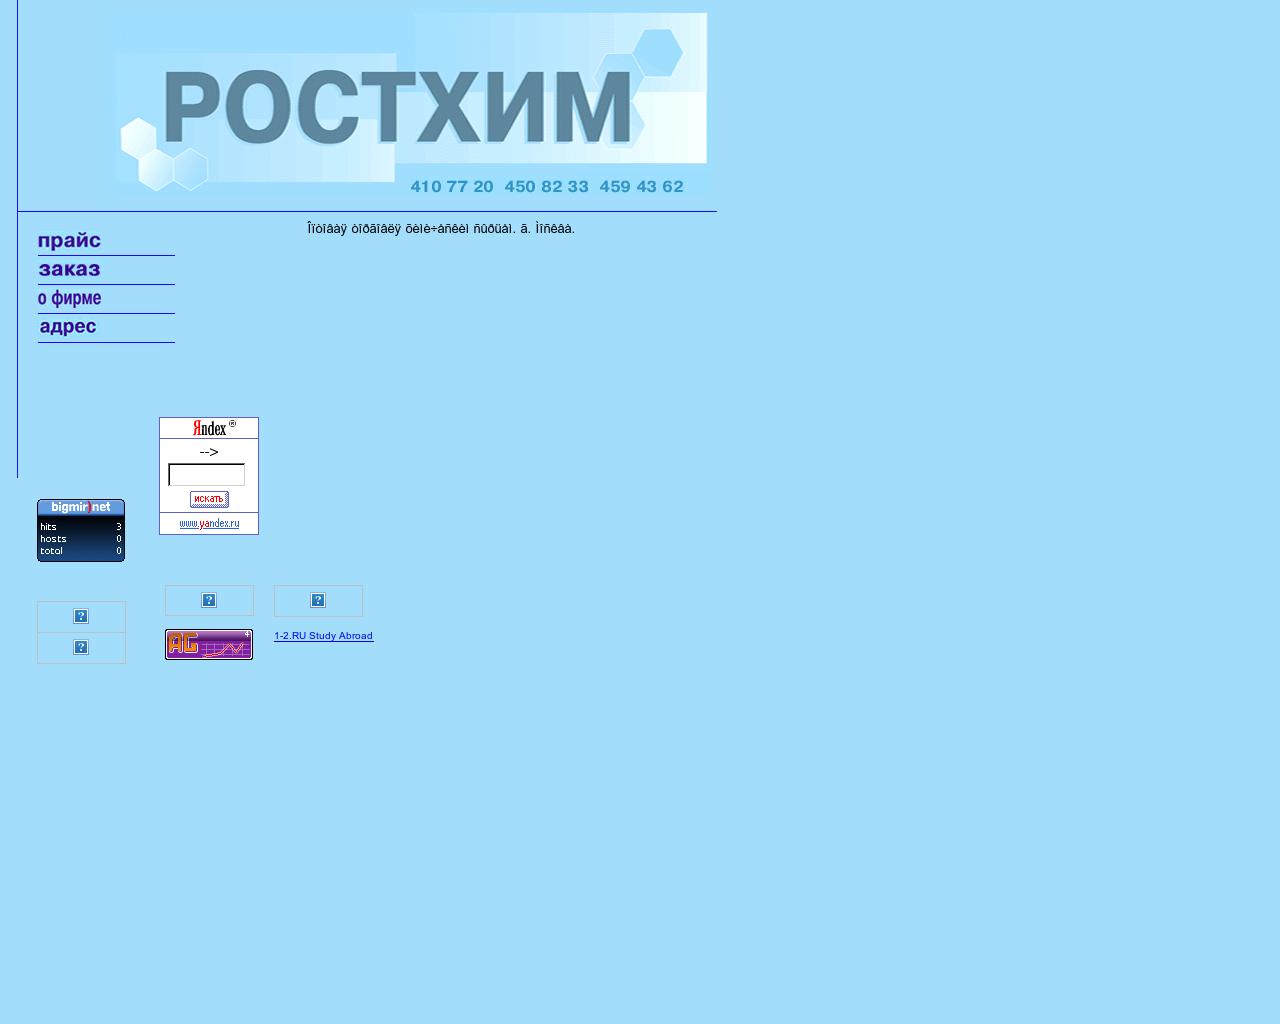 Изображение сайта rosthim.ru в разрешении 1280x1024